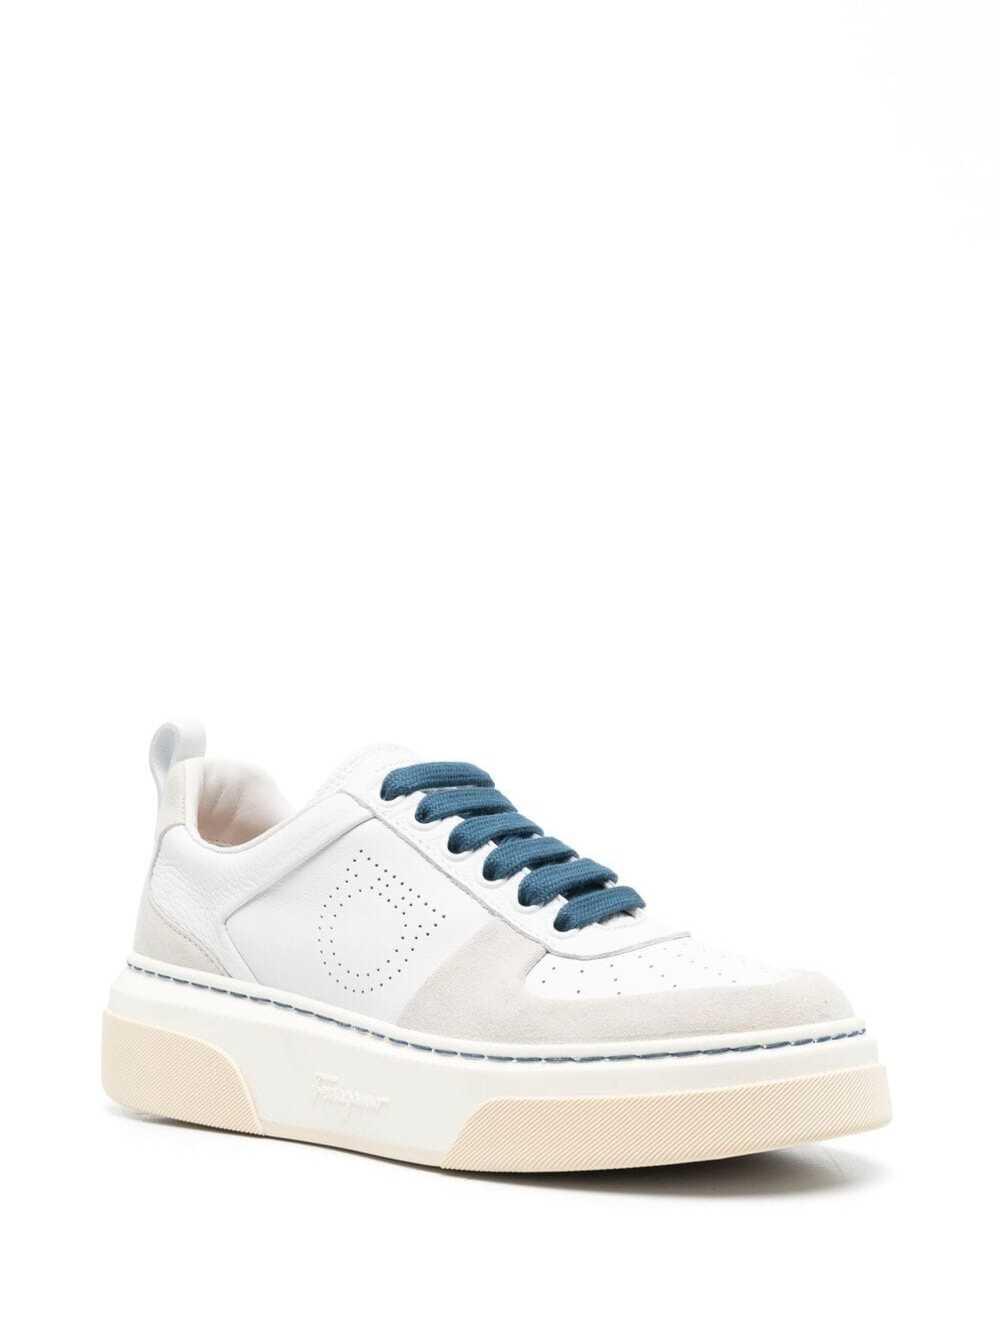 Ferragamo Cassina Low-top Sneakers in White | Lyst